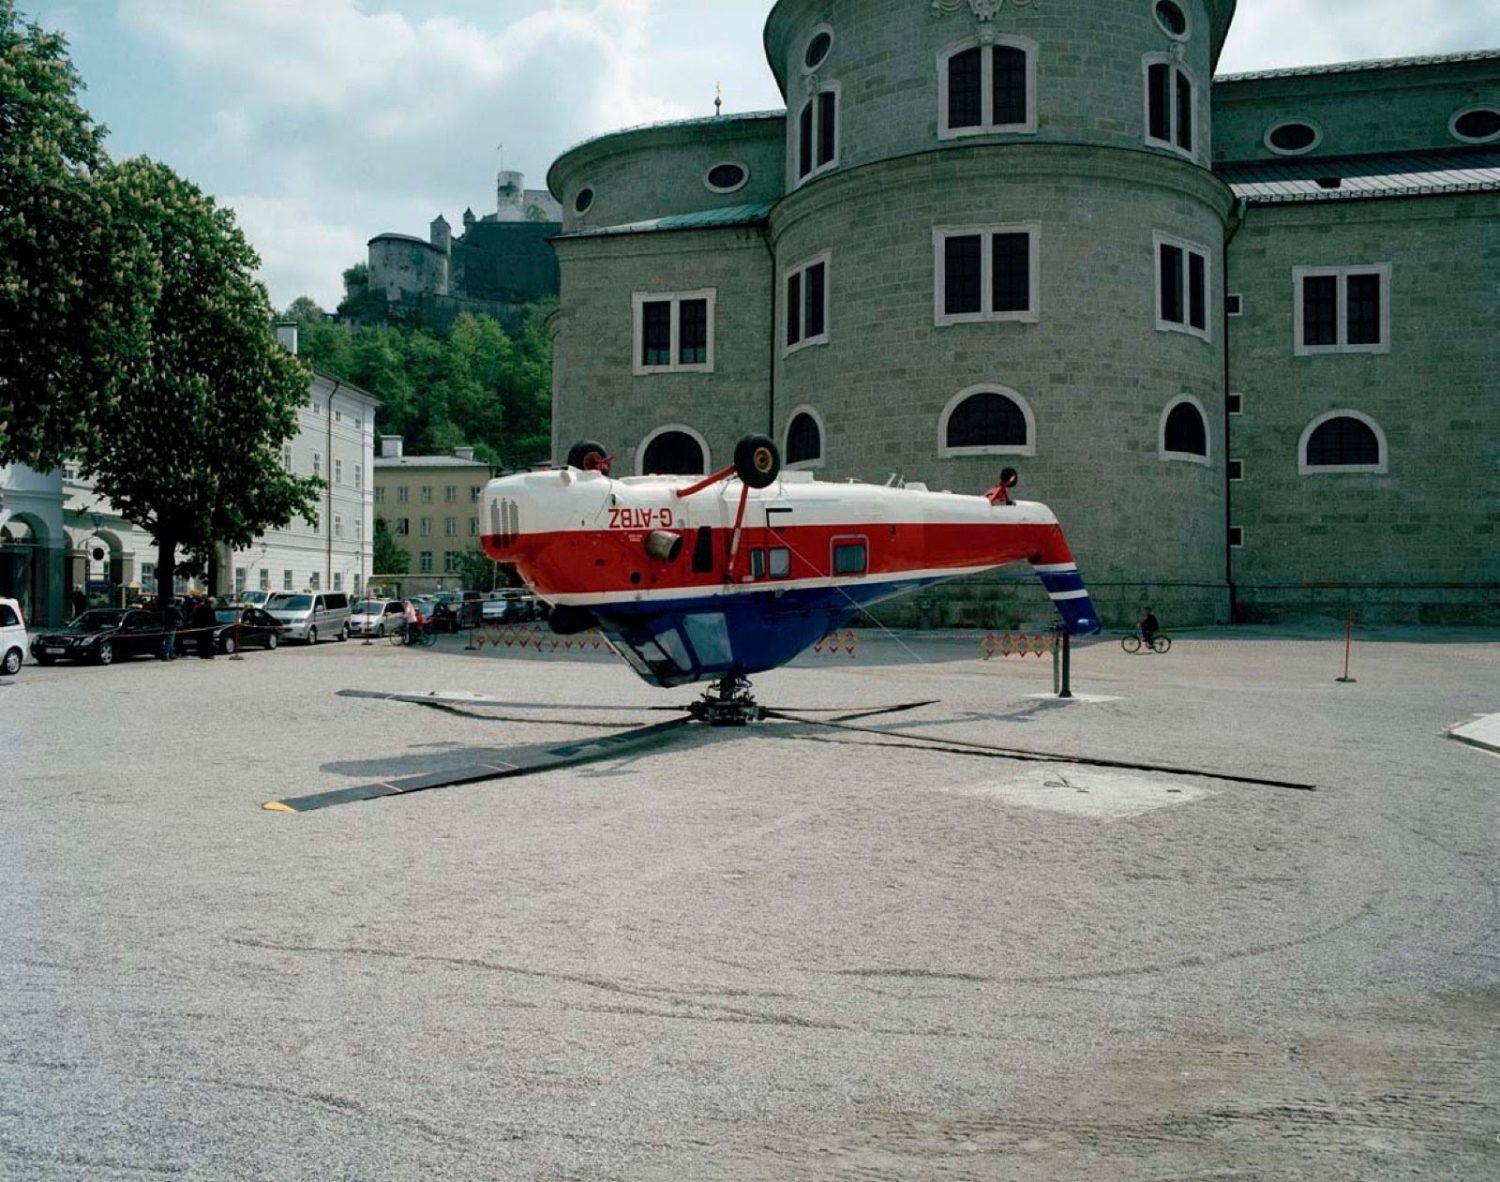 Перевернутый вертолет на площади, 2006. Паола Пиви (Paola Pivi) - современная художница. Современное искусство